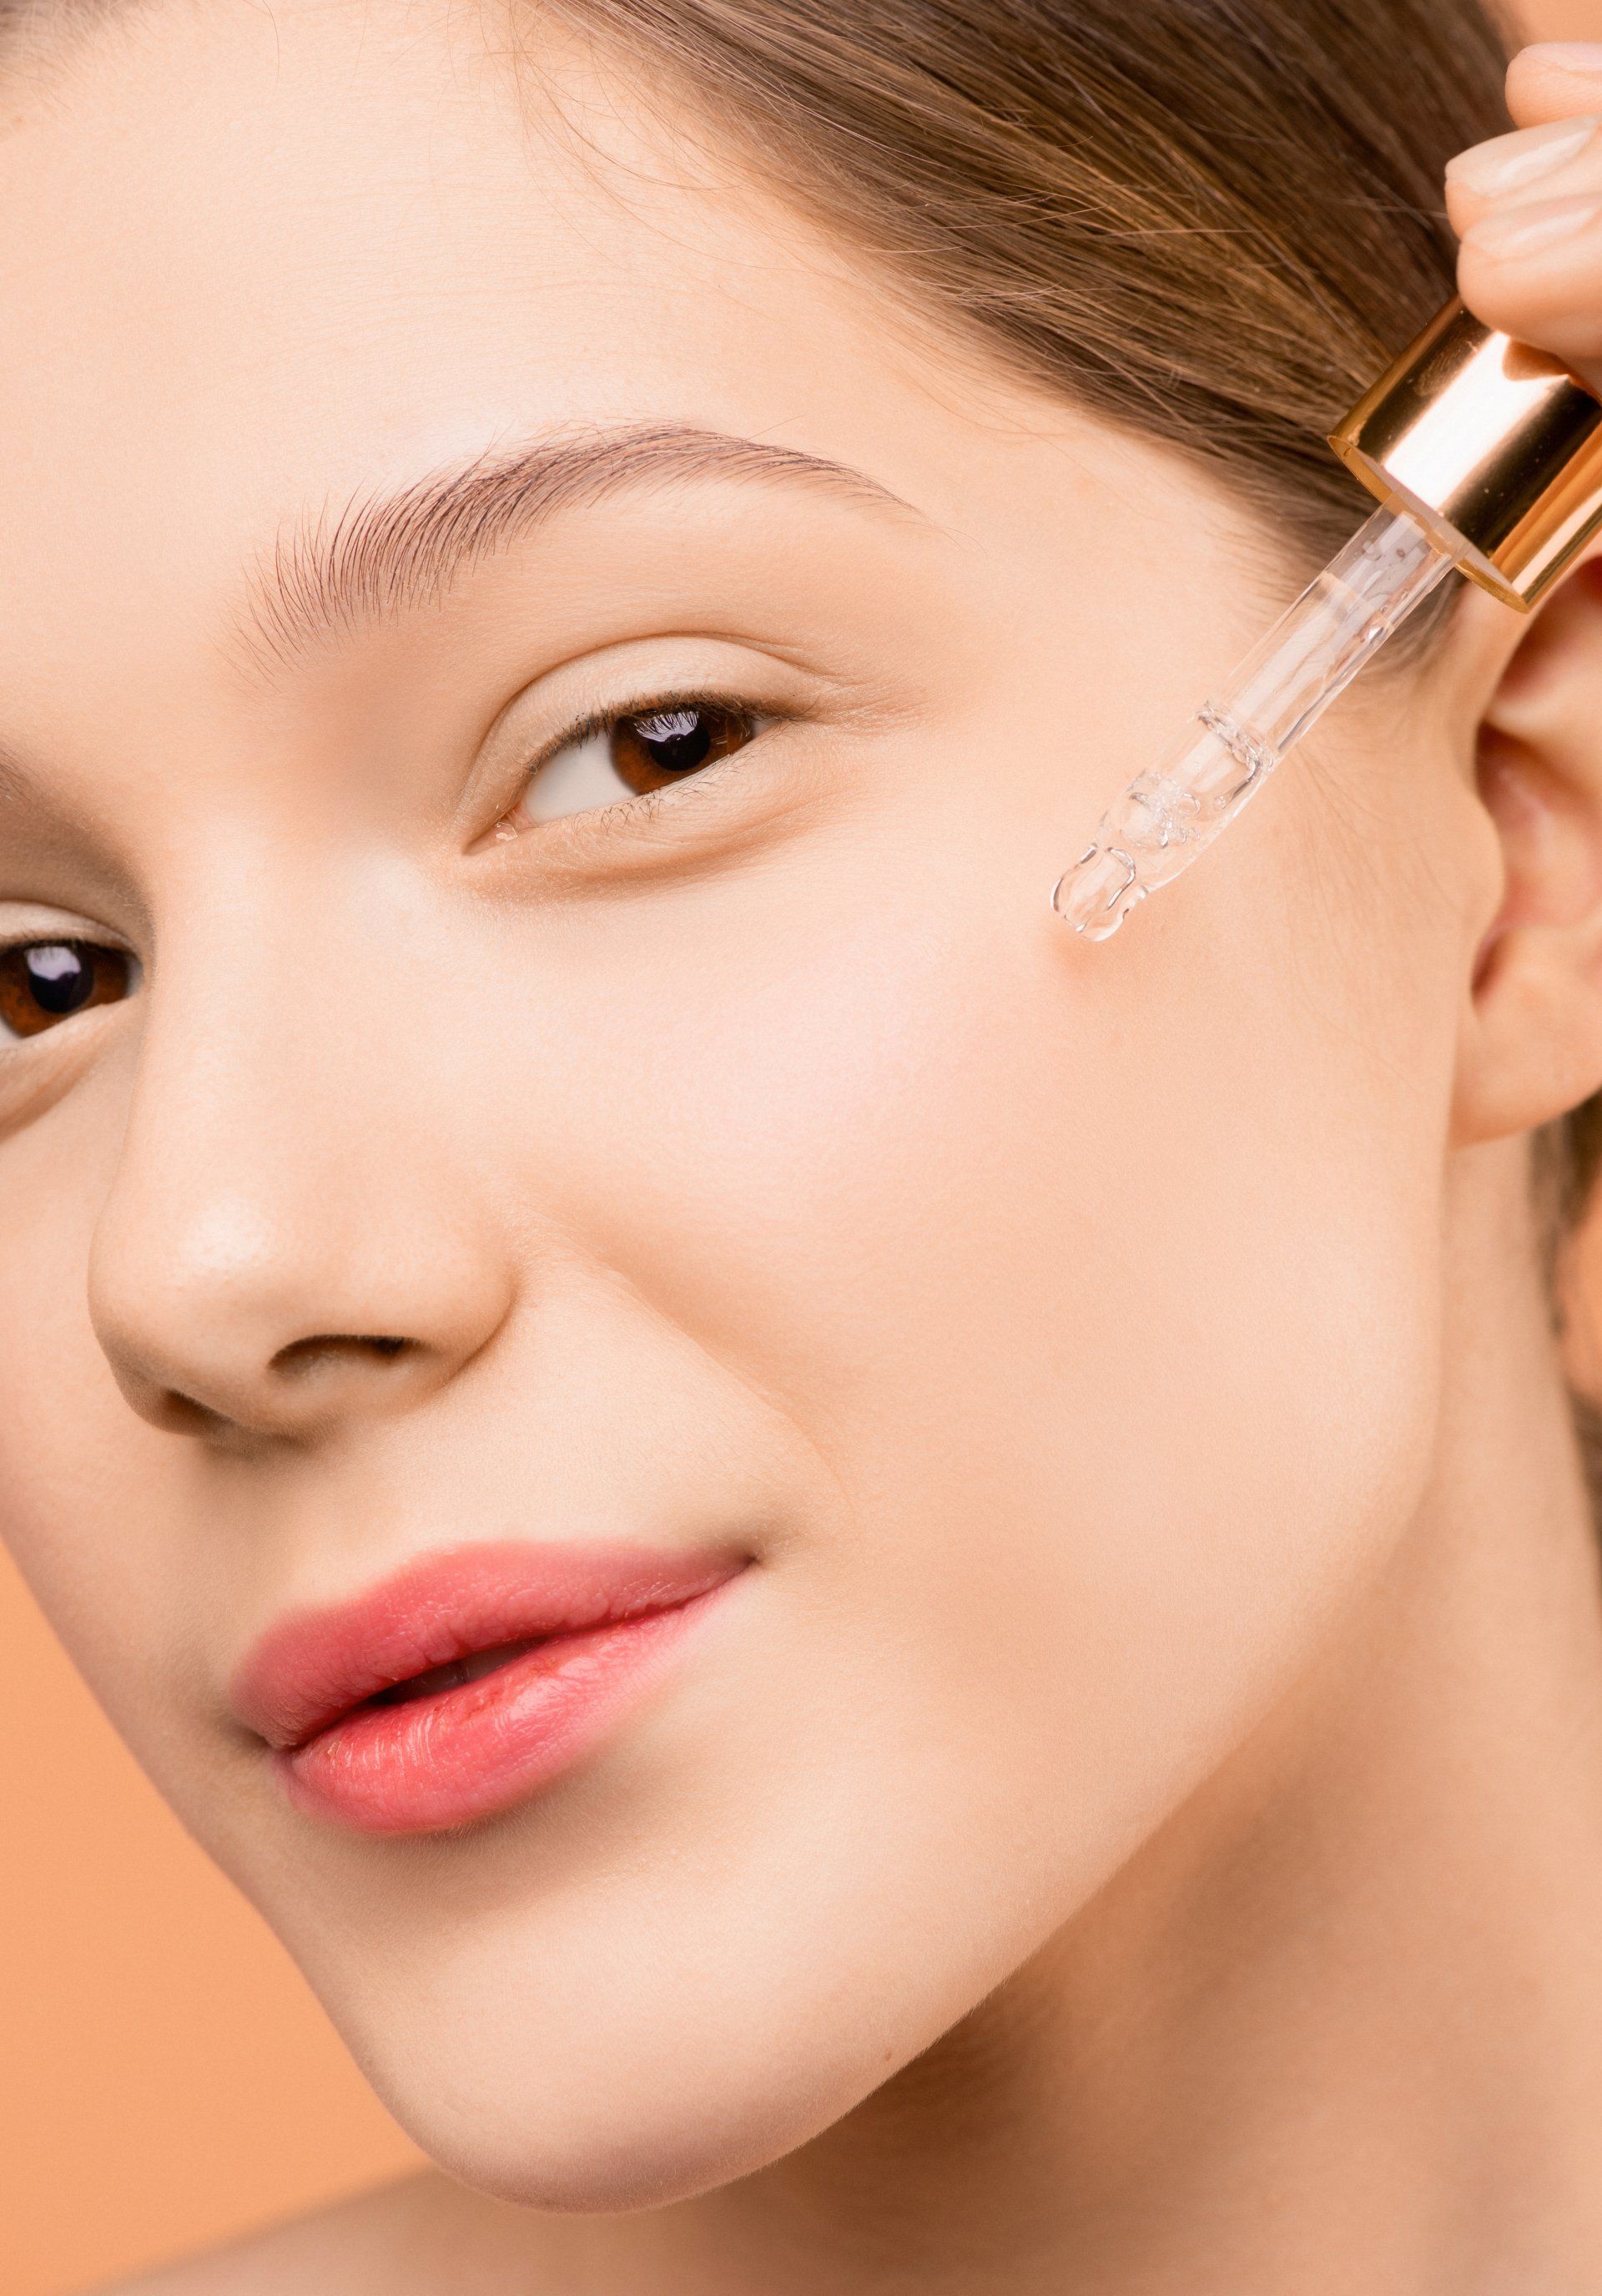 Girl using eyedropper to dispense oil onto face